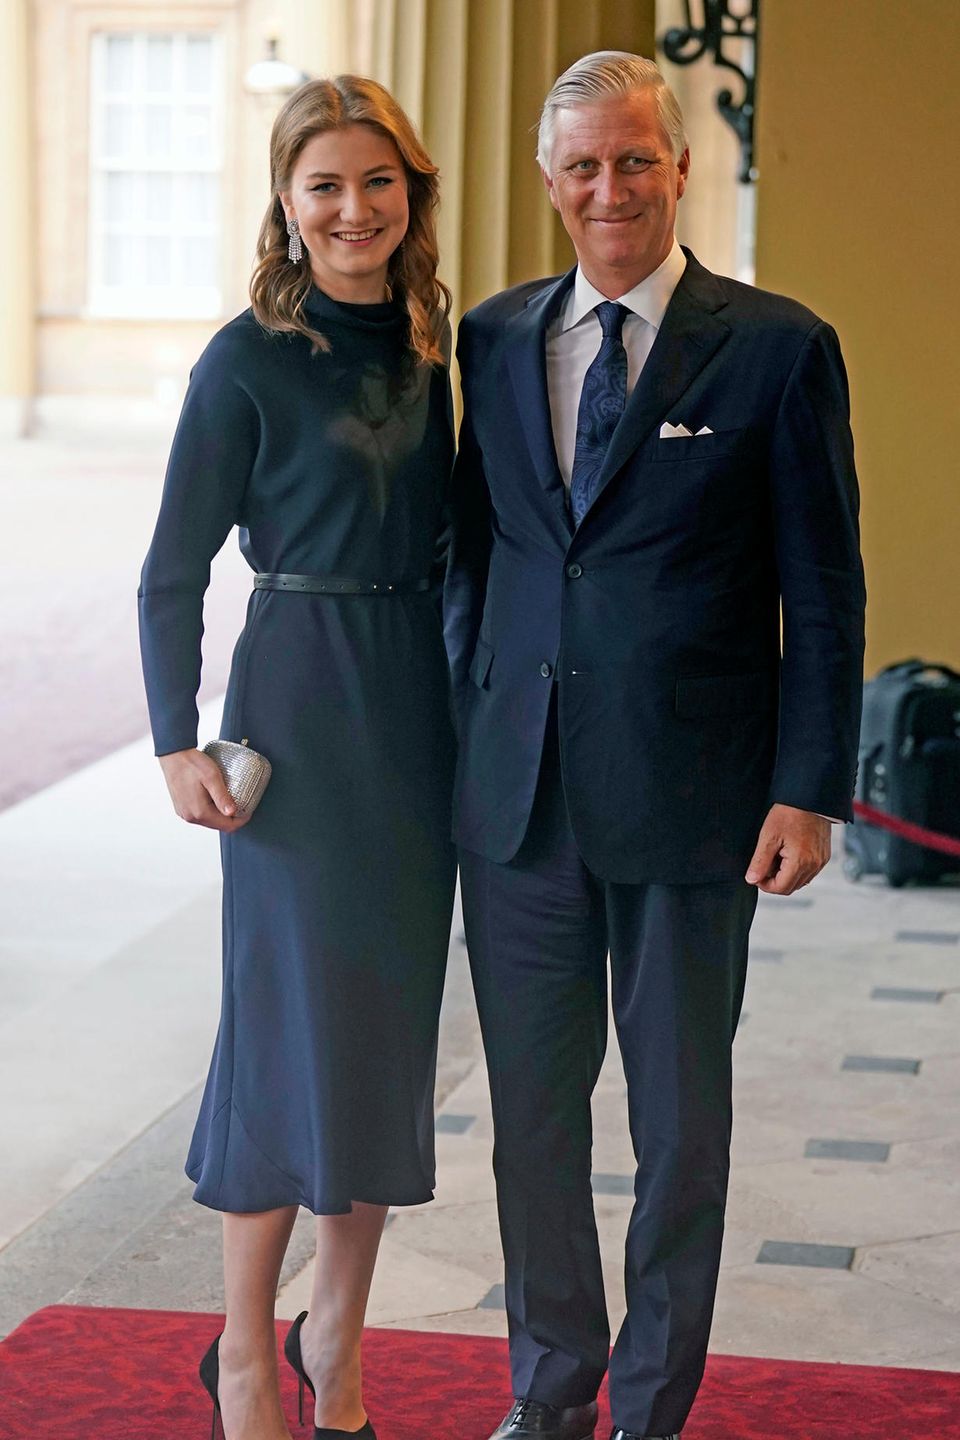 König Philippe von Belgien posiert stolz mit seiner Tochter Prinzessin Elisabeth, die angesichts des hochkarätigen Events aufgeregt sein dürfte.